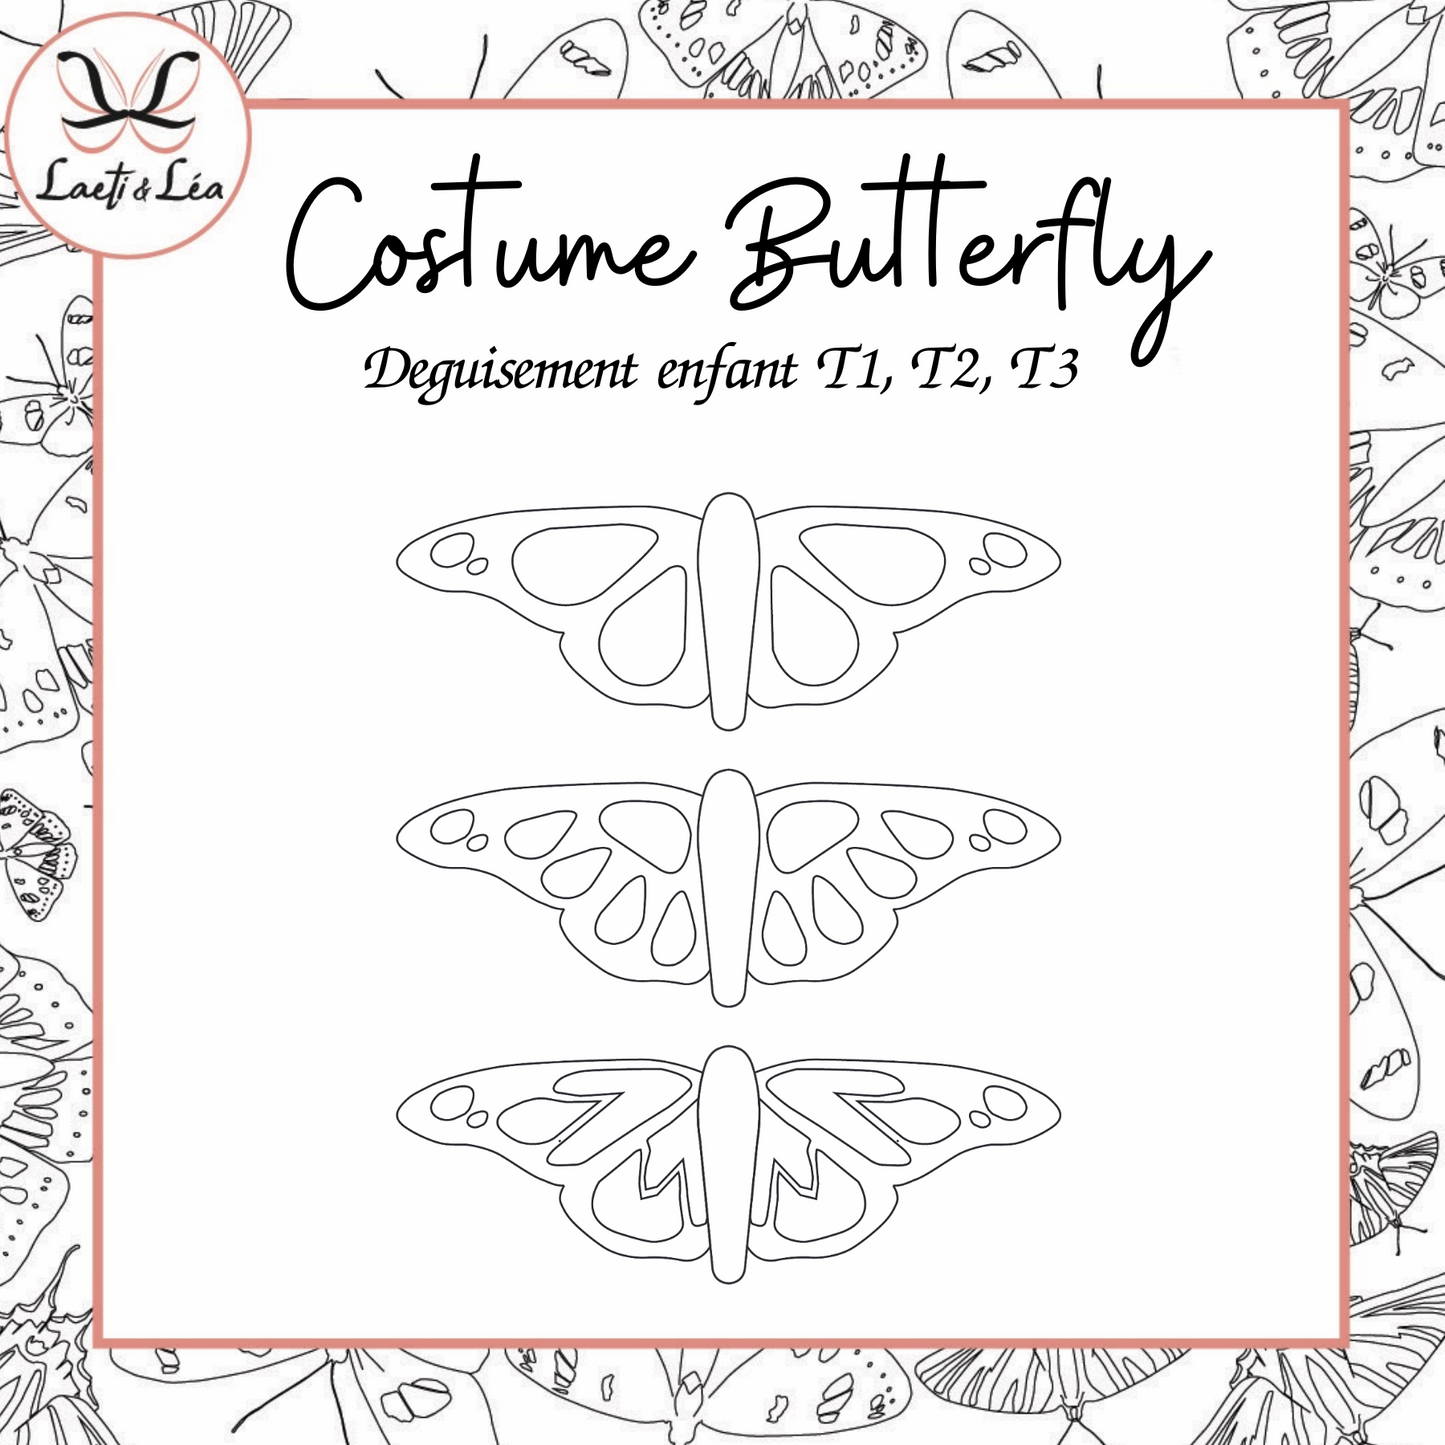 Costume Butterfly Enfant - 3 tailles (Patron de couture ailes de papillon)